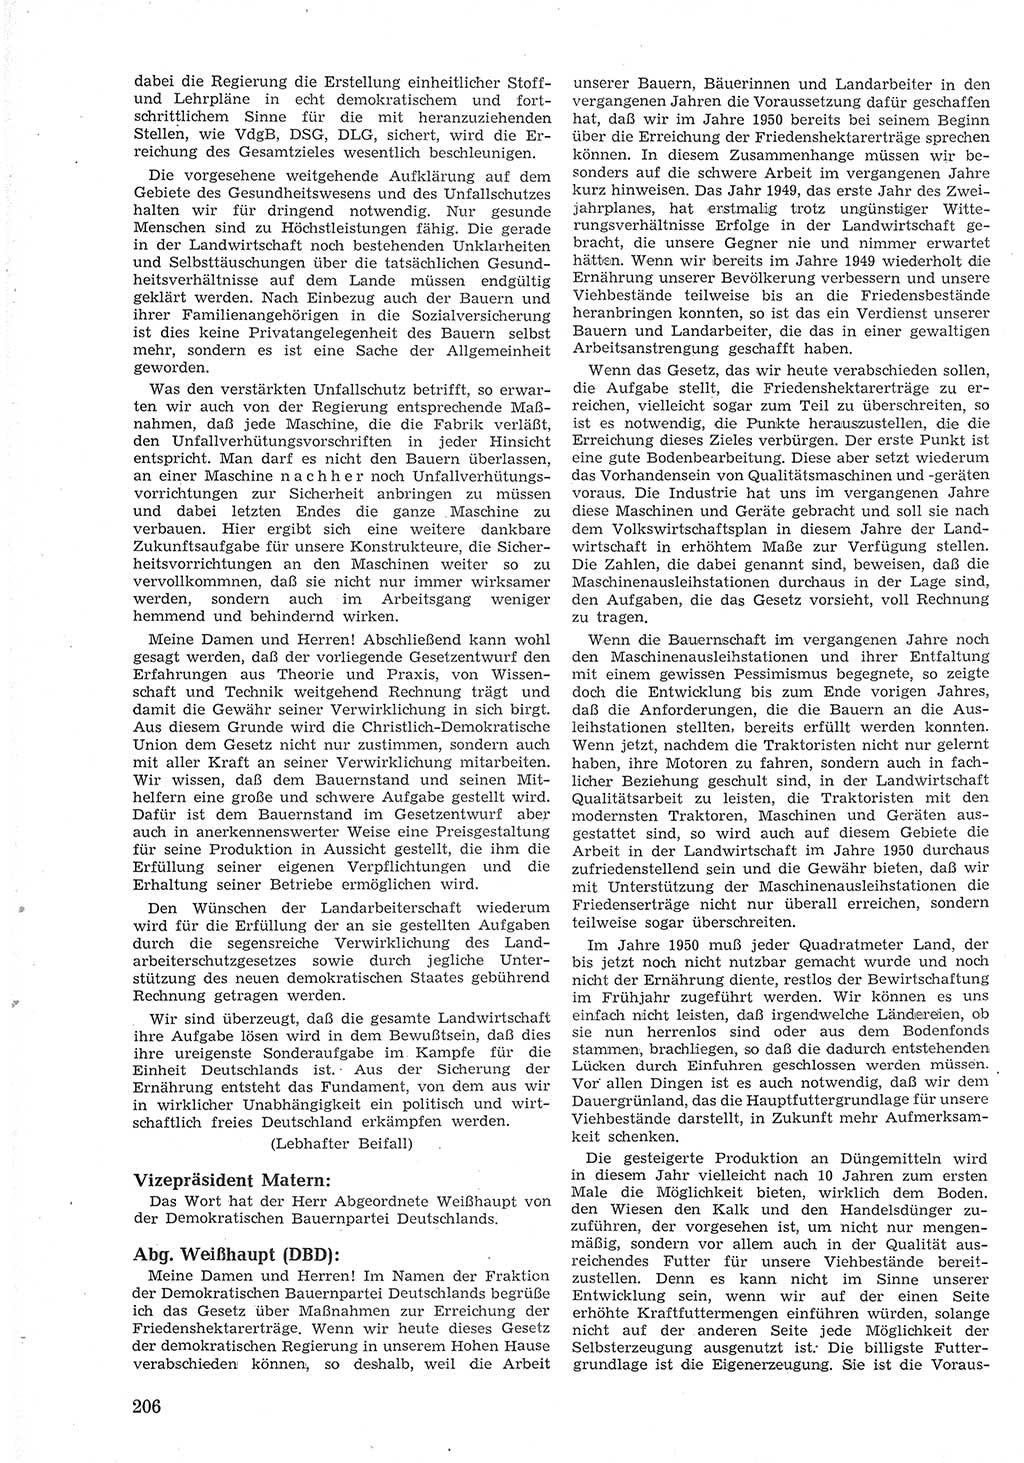 Provisorische Volkskammer (VK) der Deutschen Demokratischen Republik (DDR) 1949-1950, Dokument 218 (Prov. VK DDR 1949-1950, Dok. 218)